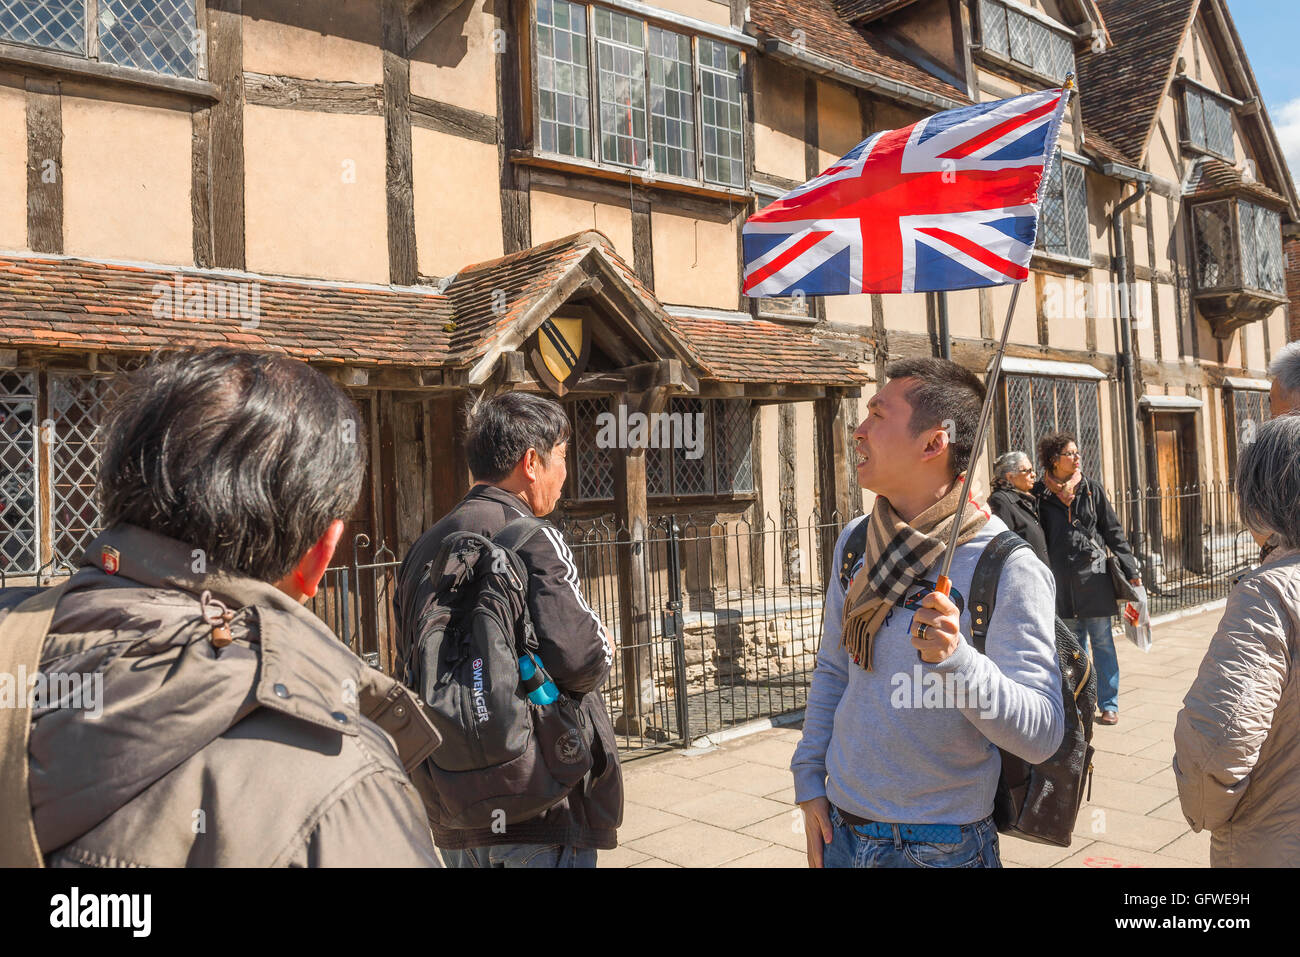 Chinesische Touristen Großbritannien, eine Gruppe von chinesischen Touristen besuchen das Haus, in dem William Shakespeare geboren wurde, Stratford-upon-Avon, Warwickshire, England. Stockfoto